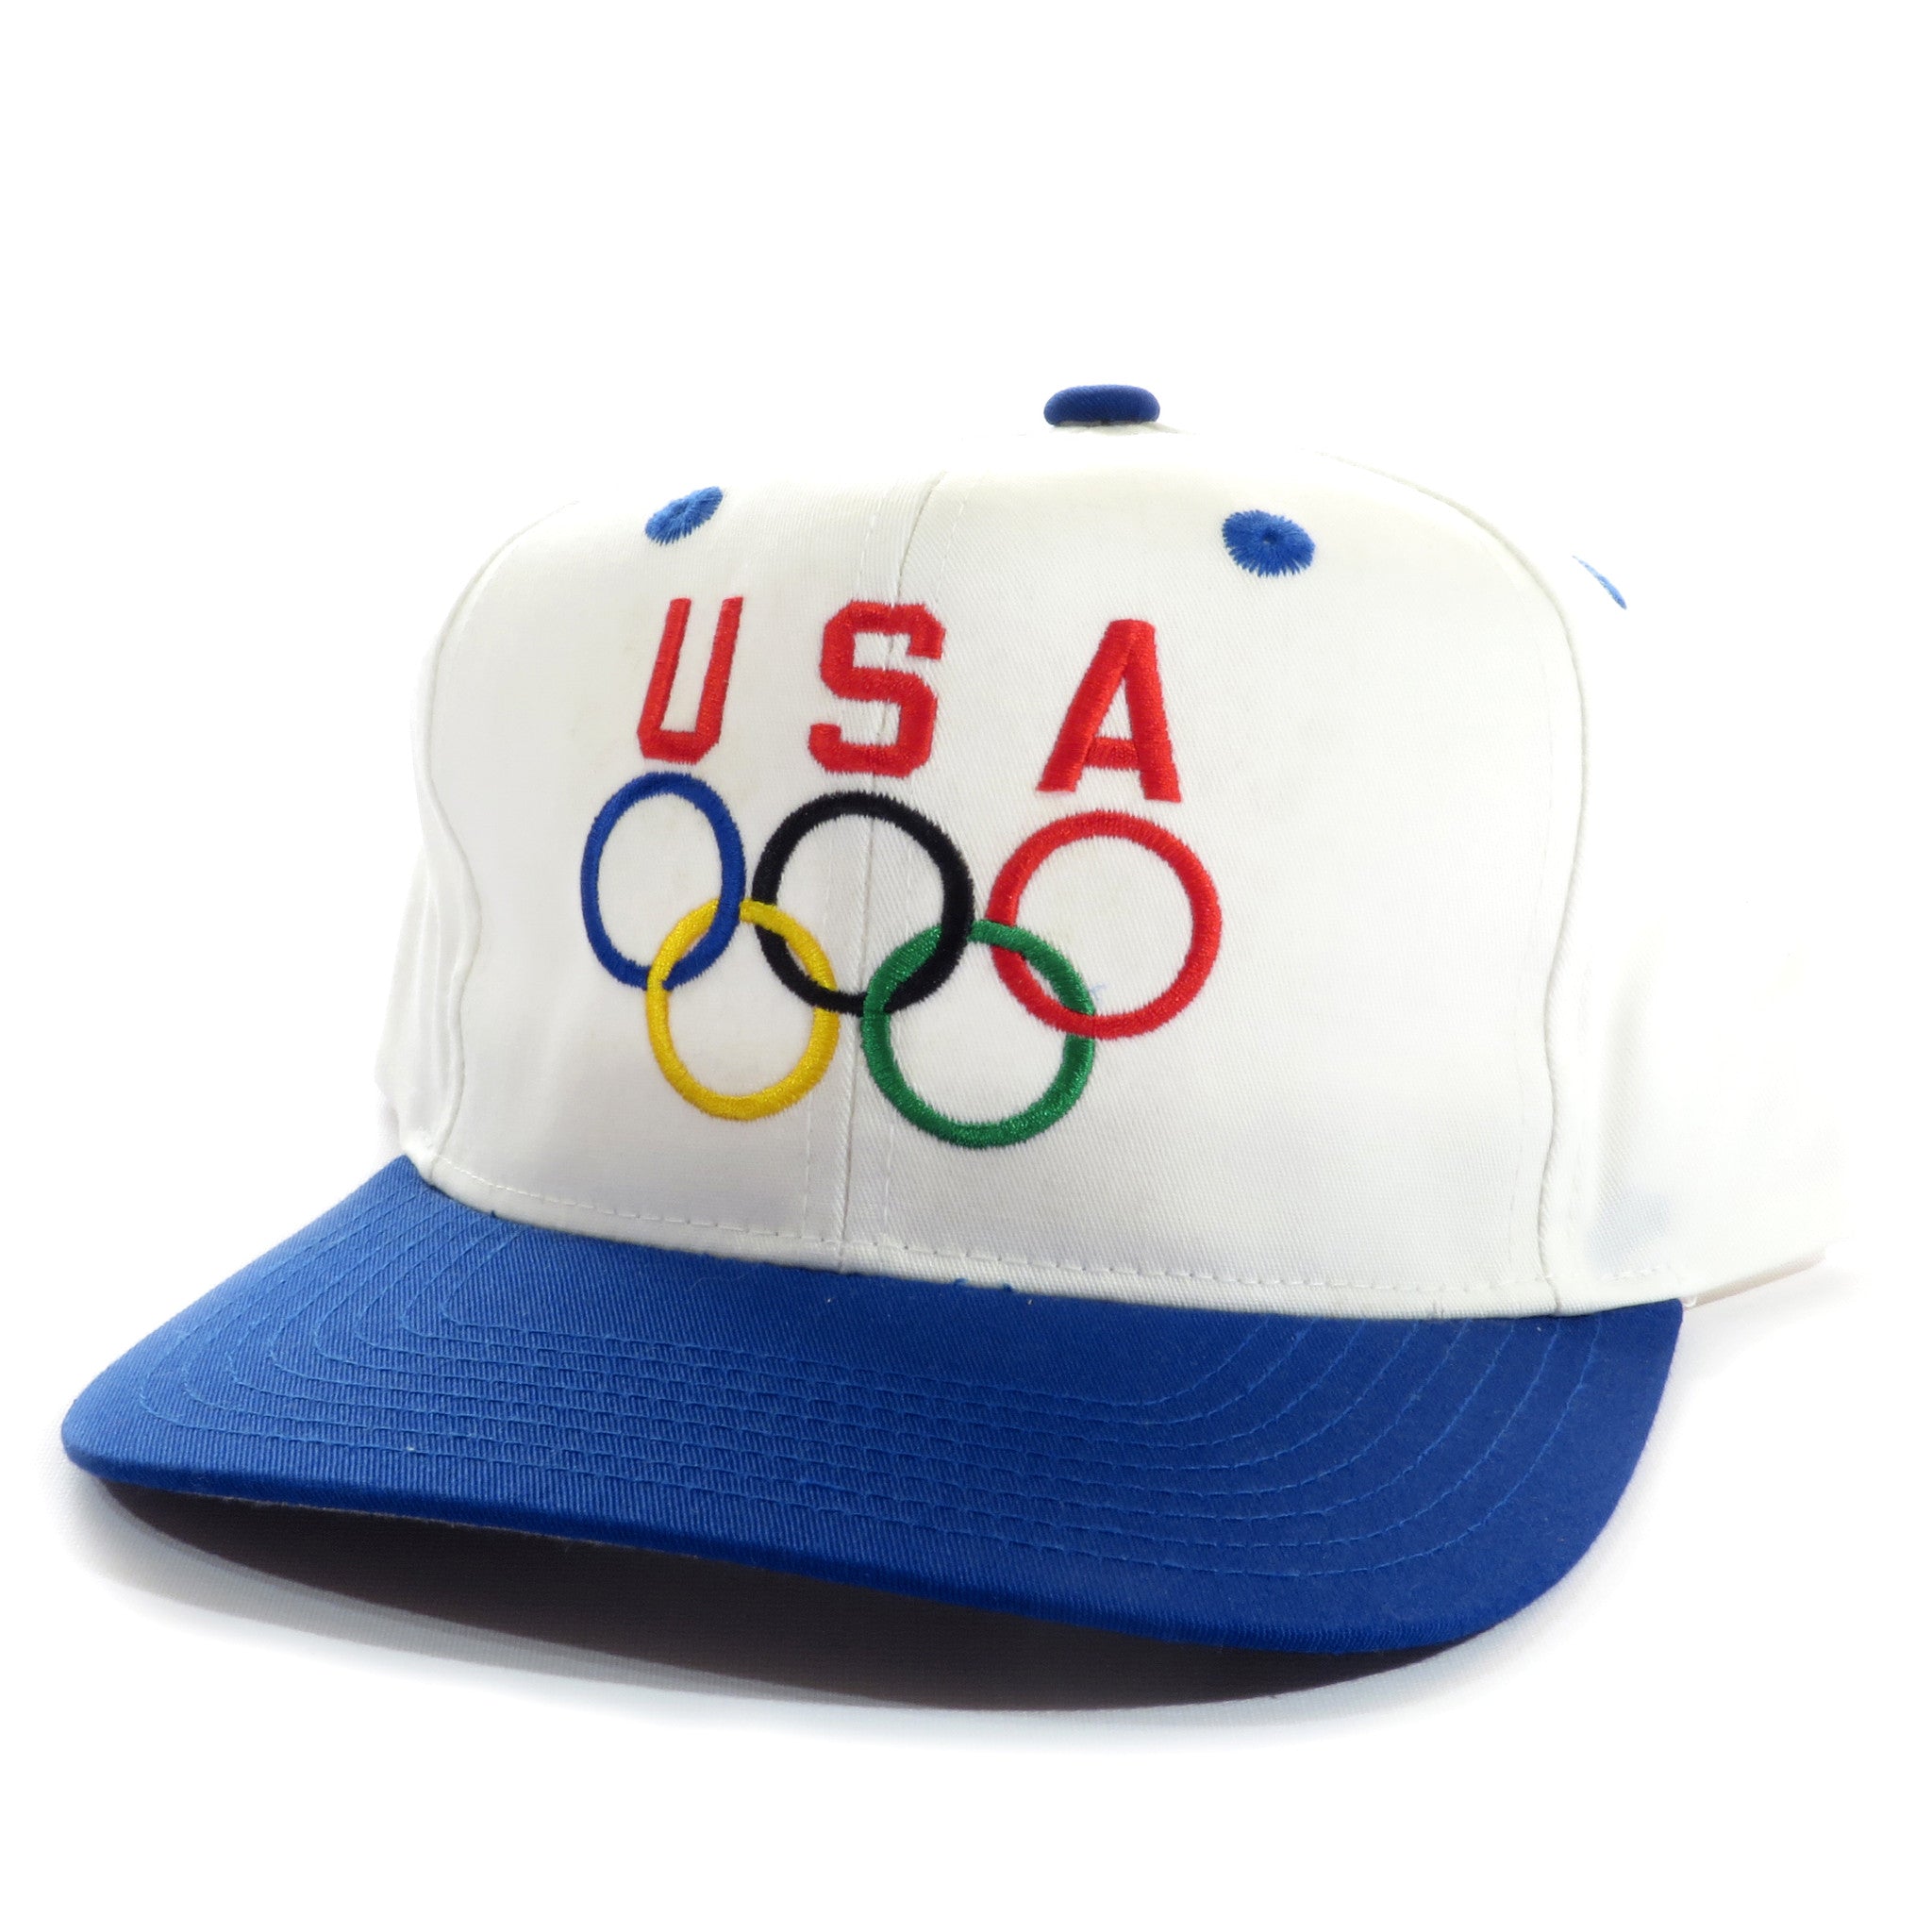 USA Olympics Snapback Hat